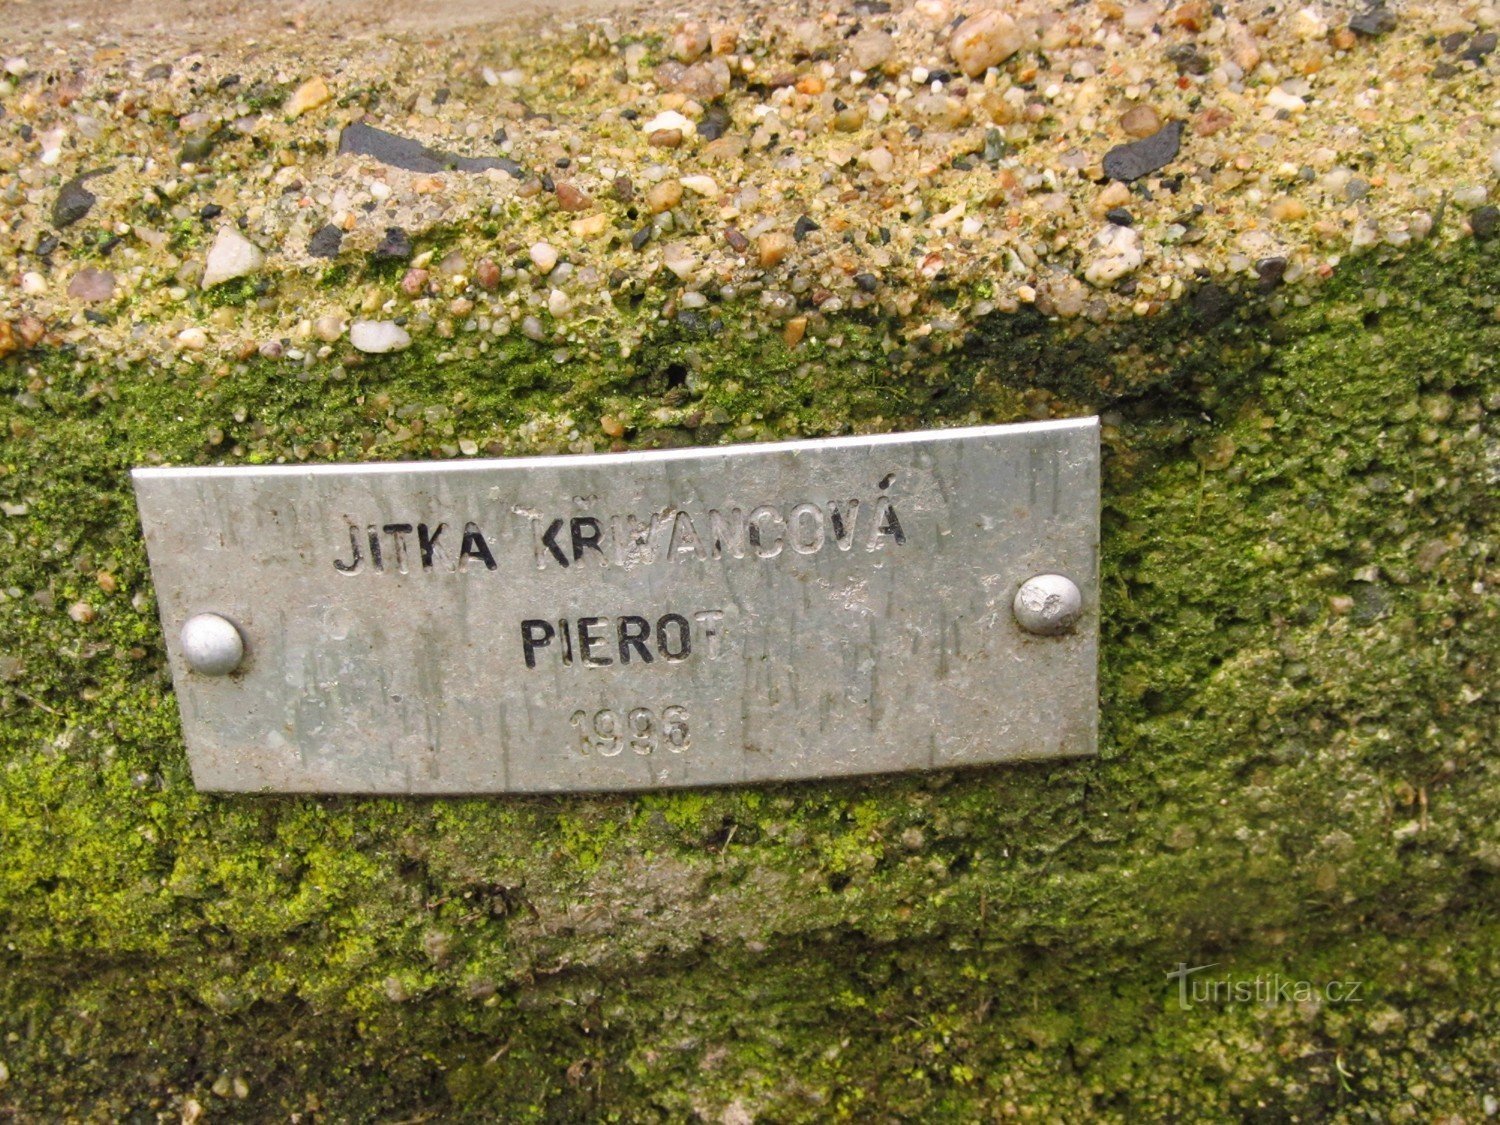 Статуя Пейро в Кадані на стінах, автор Jitka Křivancová